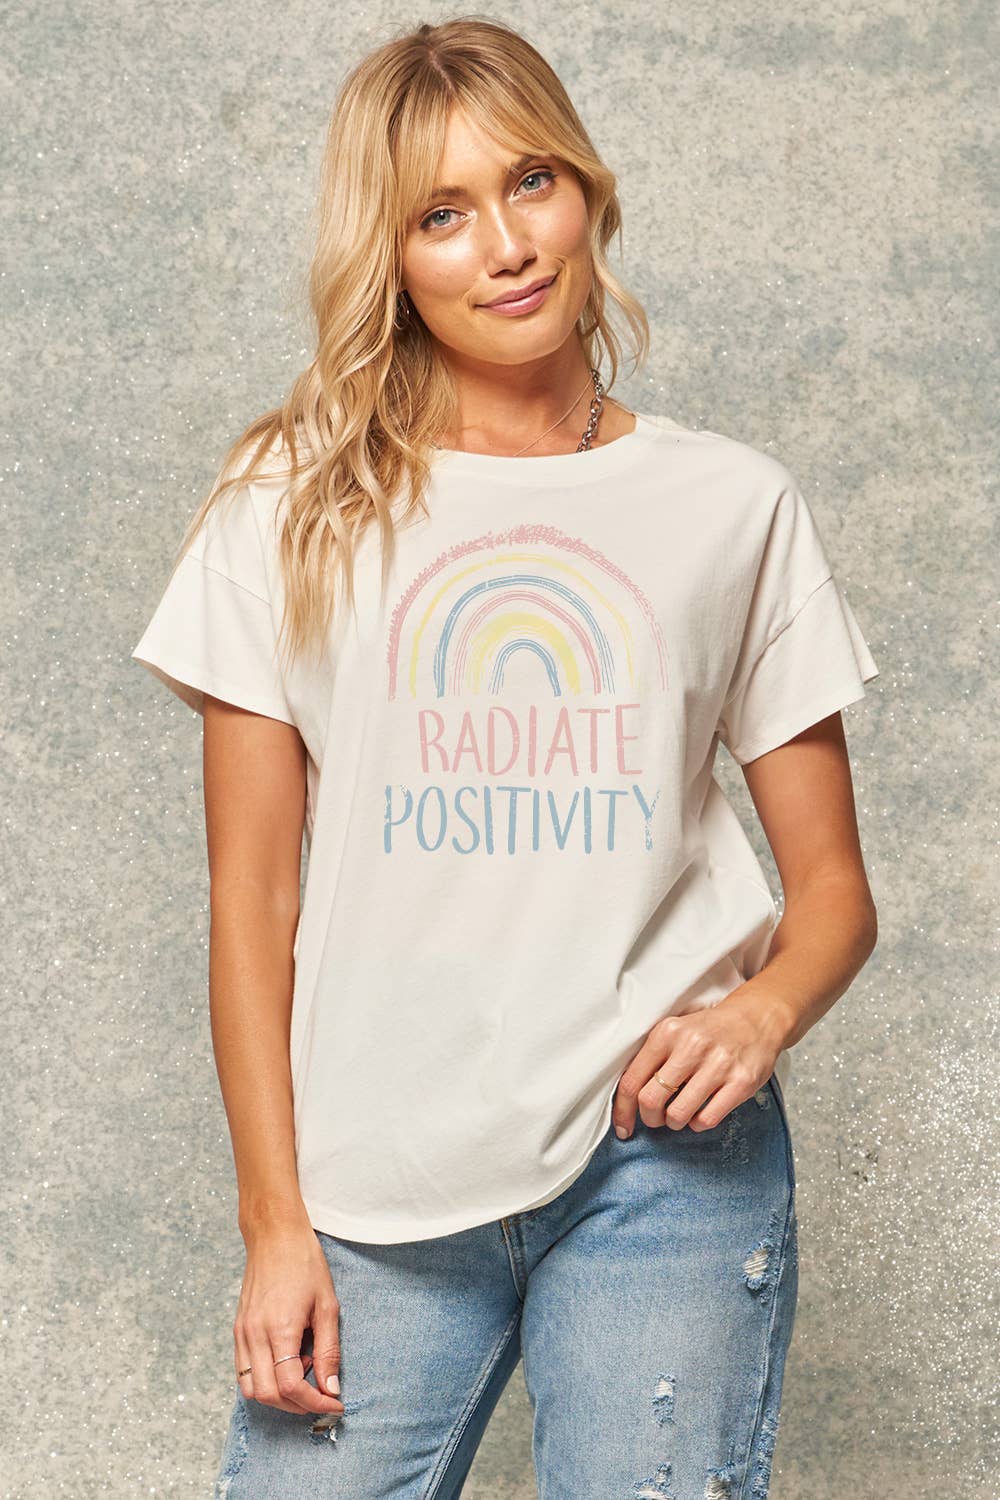 Sale Radiate Positivity Vintage Rainbow Graphic Tee